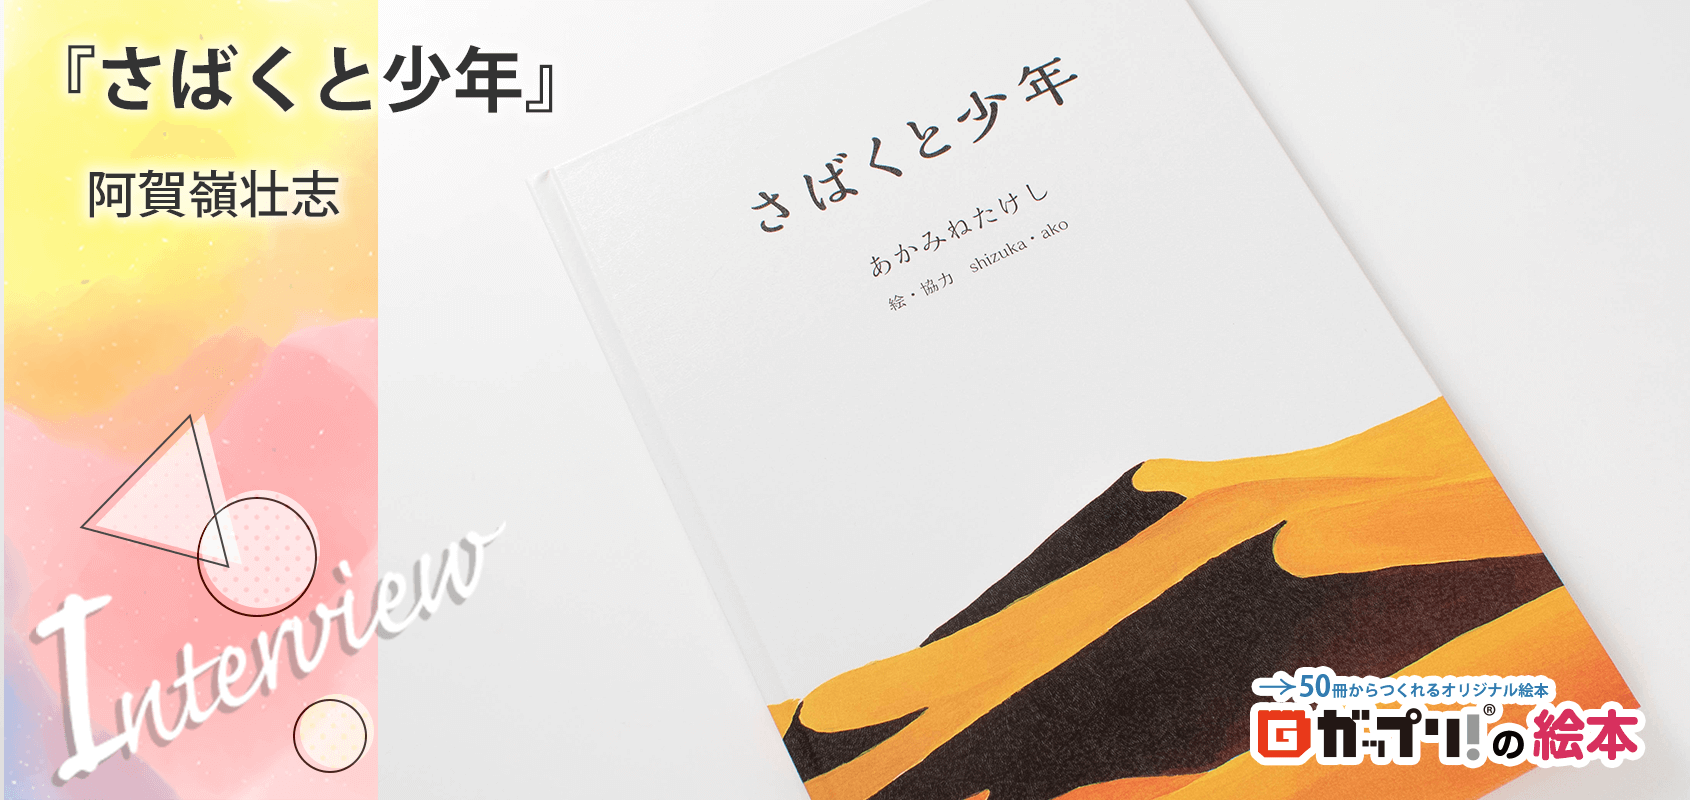 阿賀嶺壮志様製作のオリジナル絵本『さばくと少年』